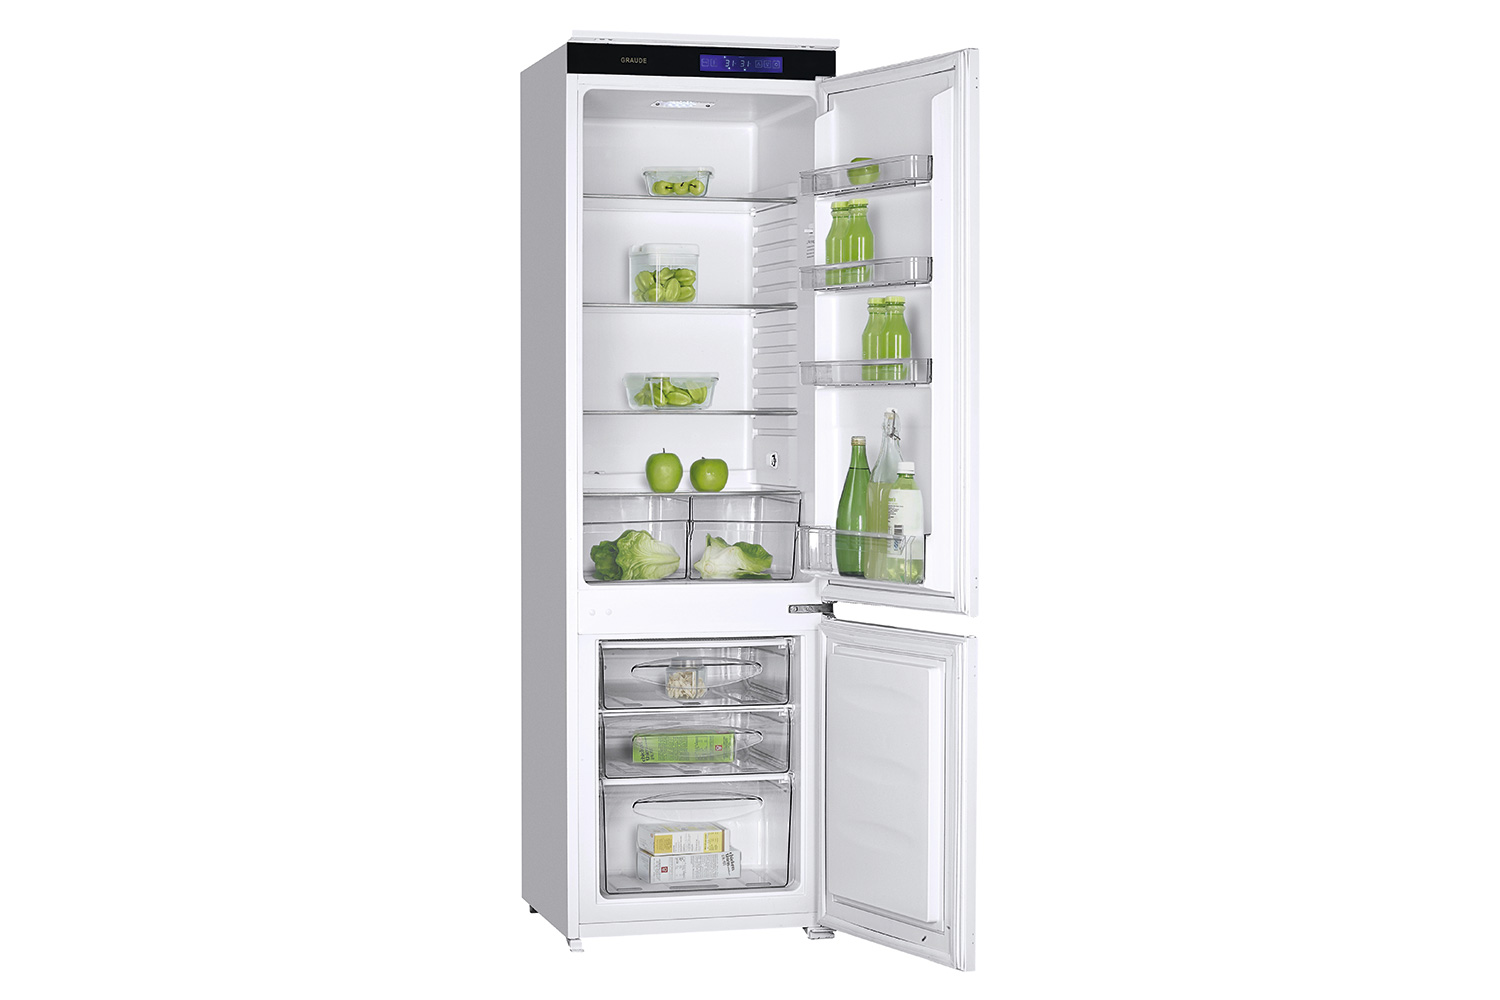 фото Встраиваемый холодильник ikg 180.1 graude